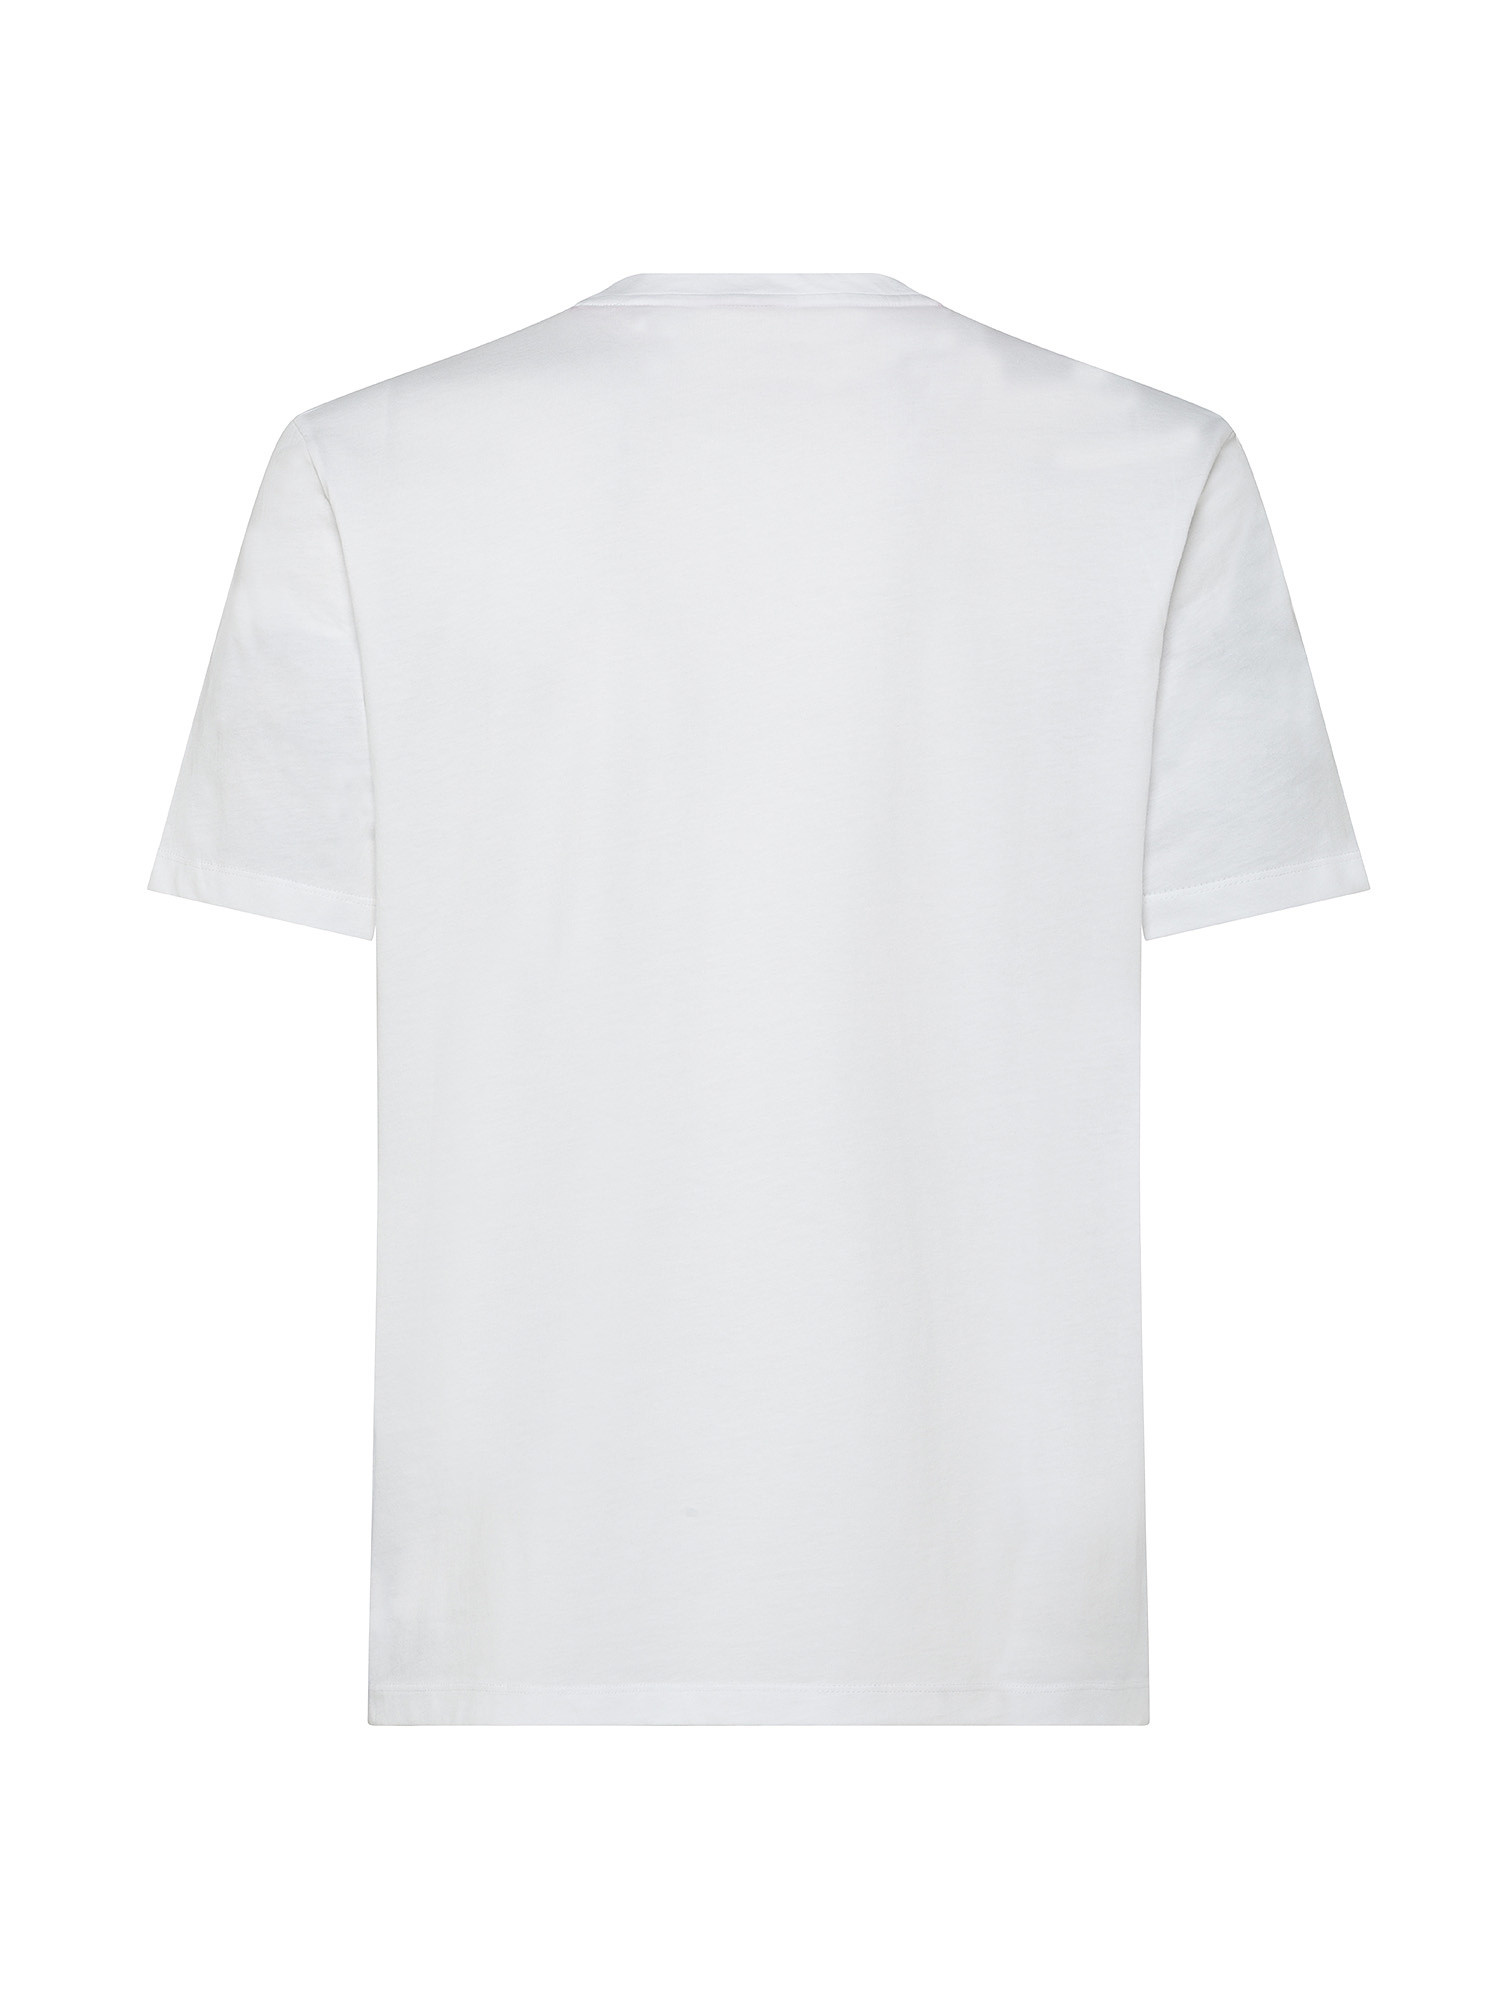 Hugo - Logo cotton T-shirt, White, large image number 1